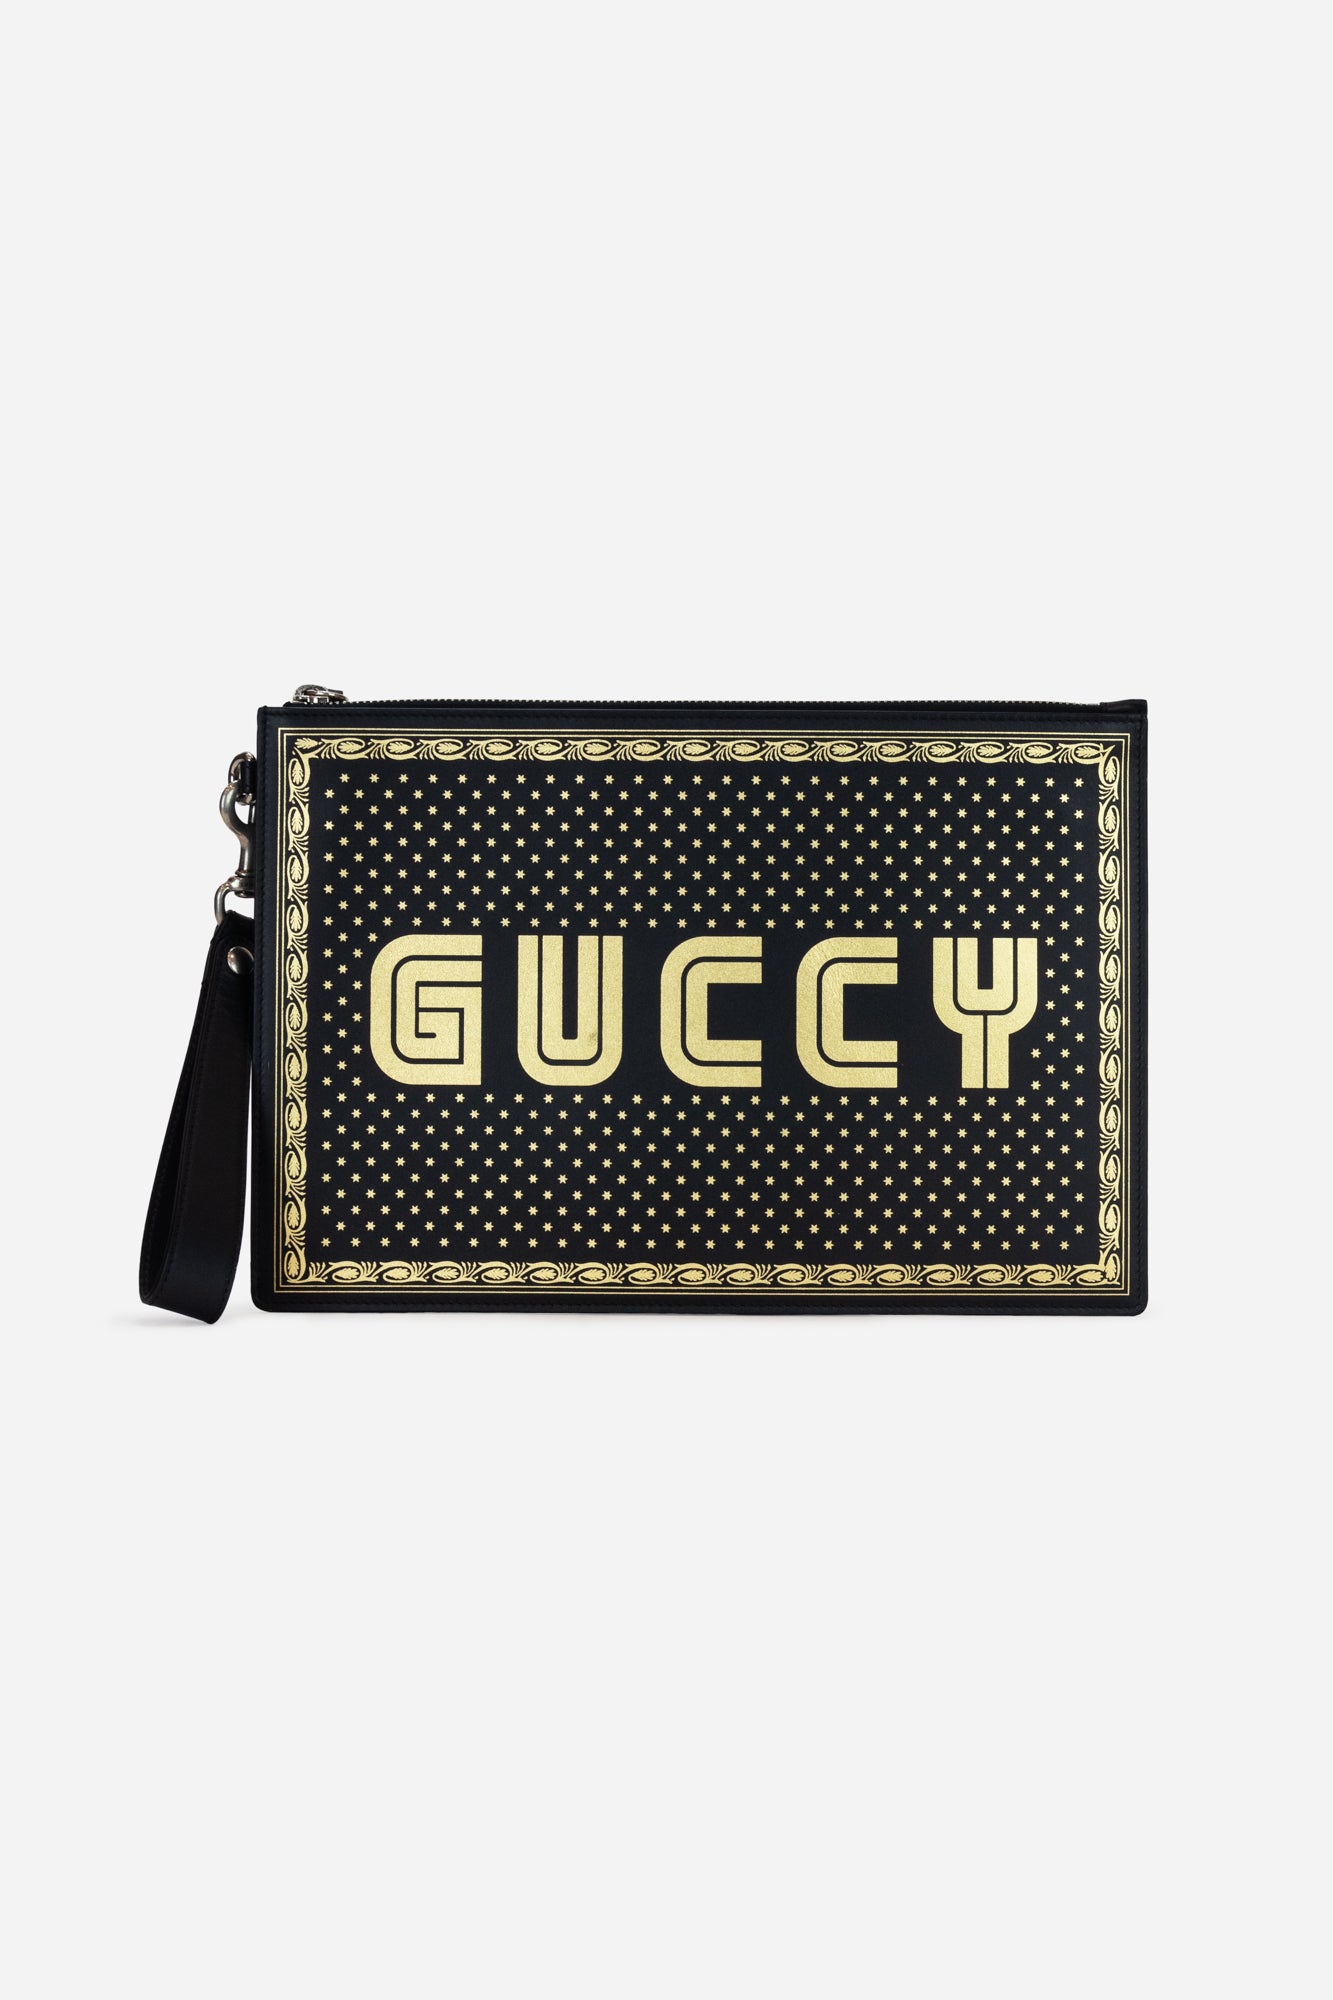 Gucci x Sega Guccy Stars Clutch